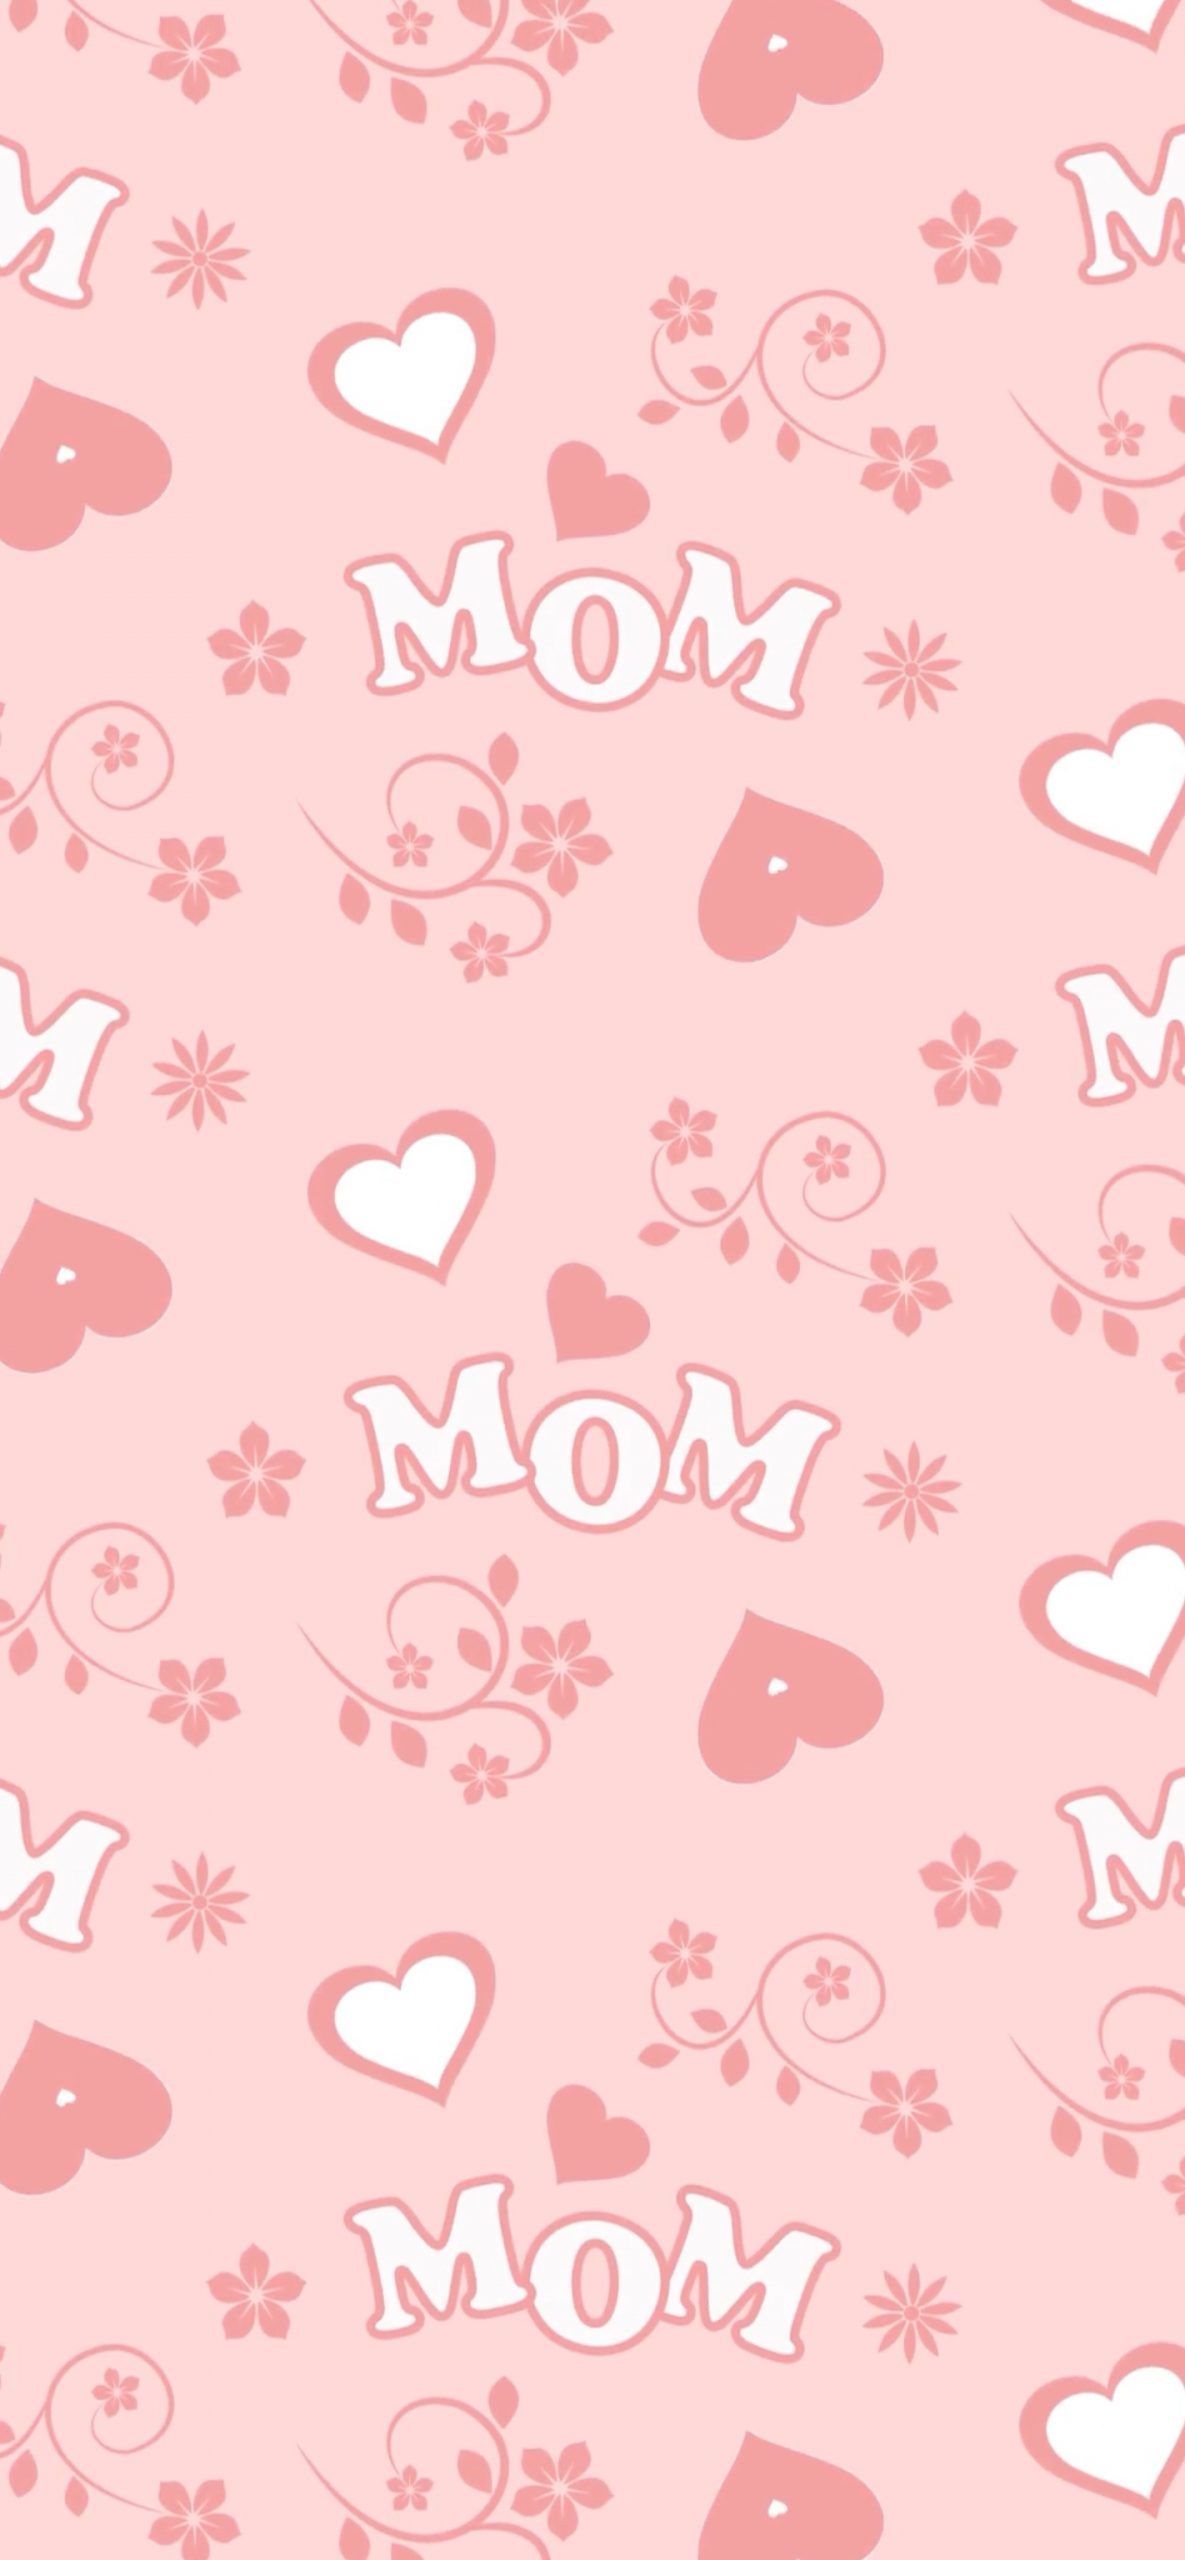 Festa della Mamma, mom's day